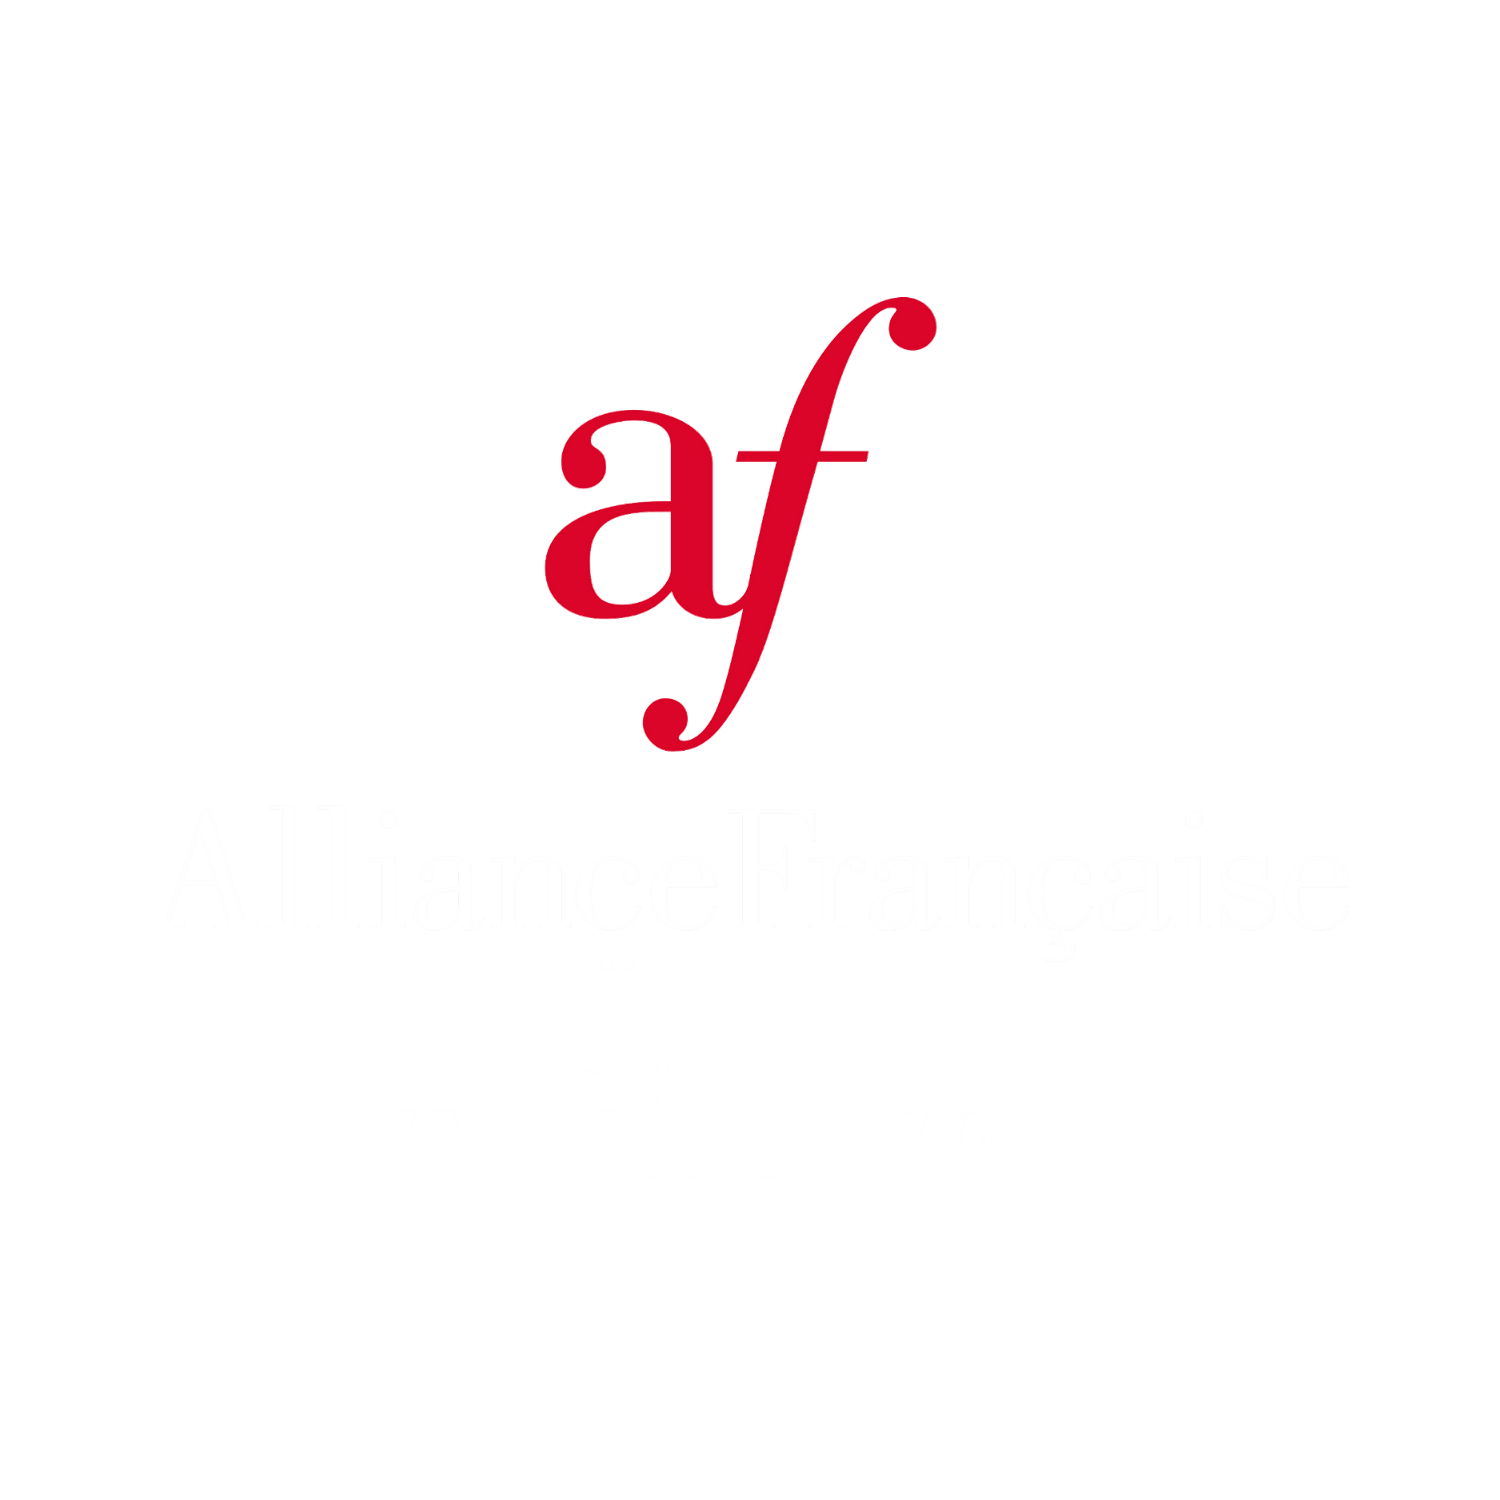 Alliance Française de Norrköping